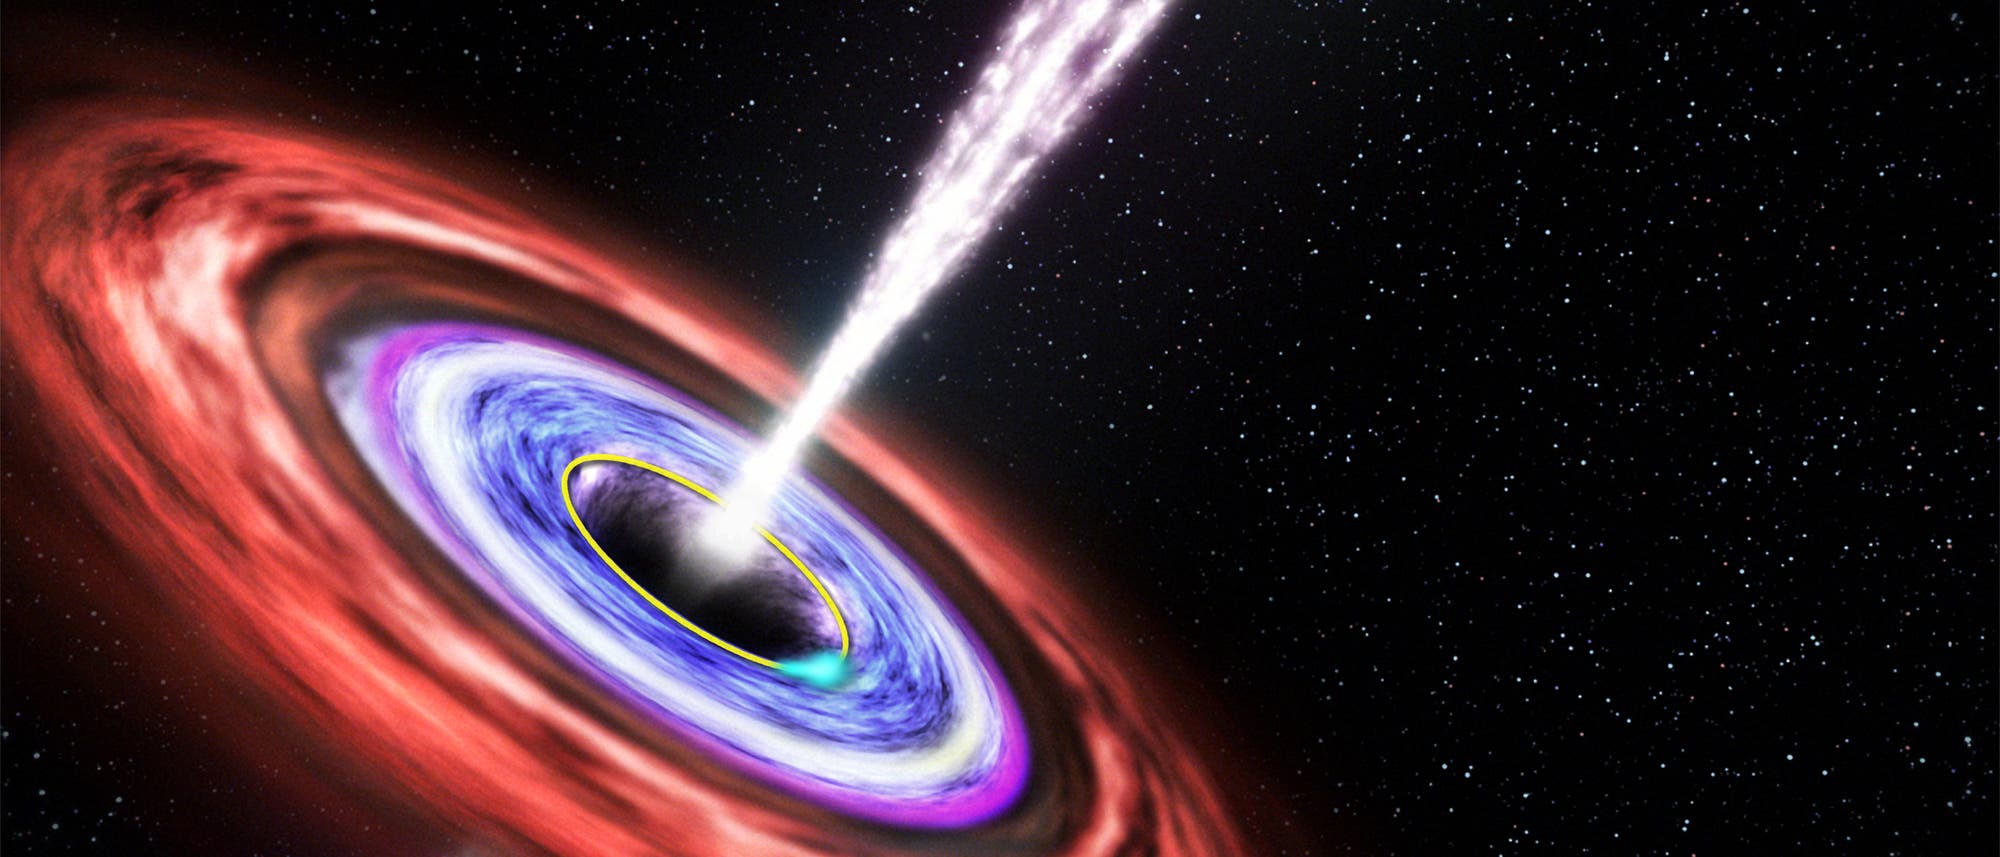 Extrem massereiches Schwarzes Loch mit Akkretionsscheibe